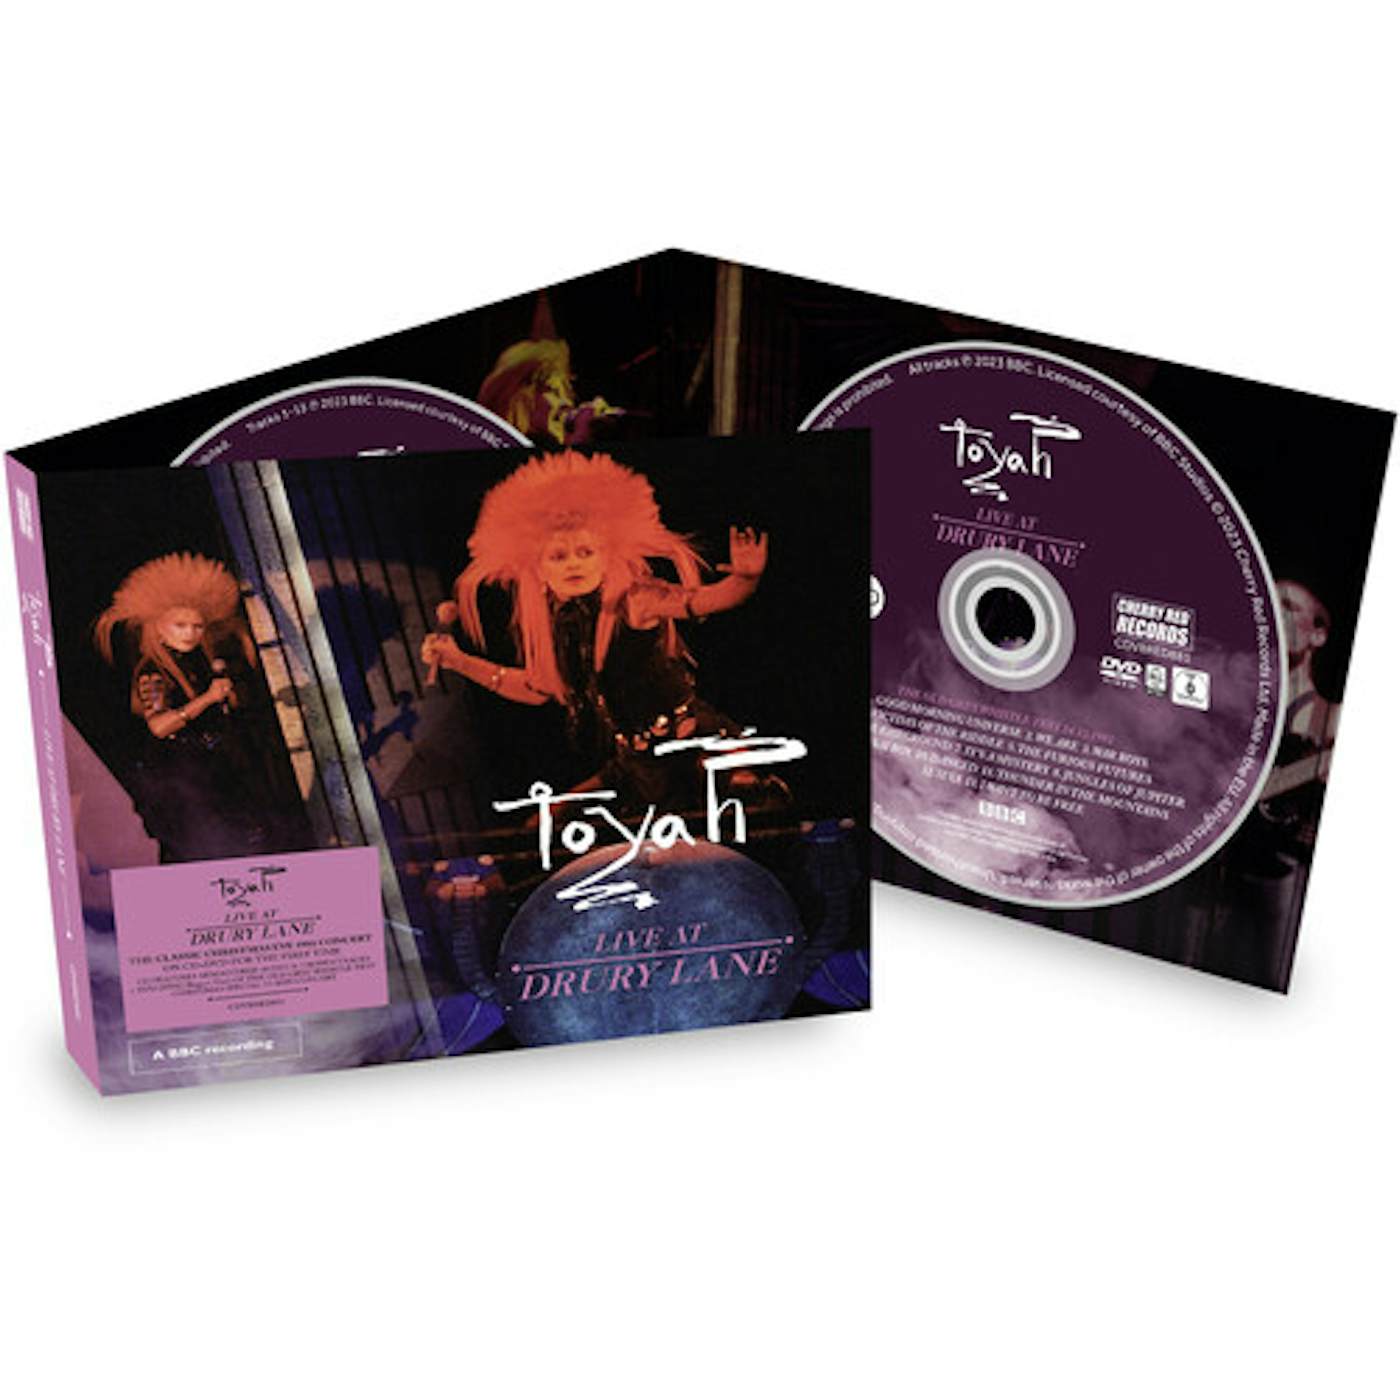 Toyah LIVE AT DRURY LANE CD